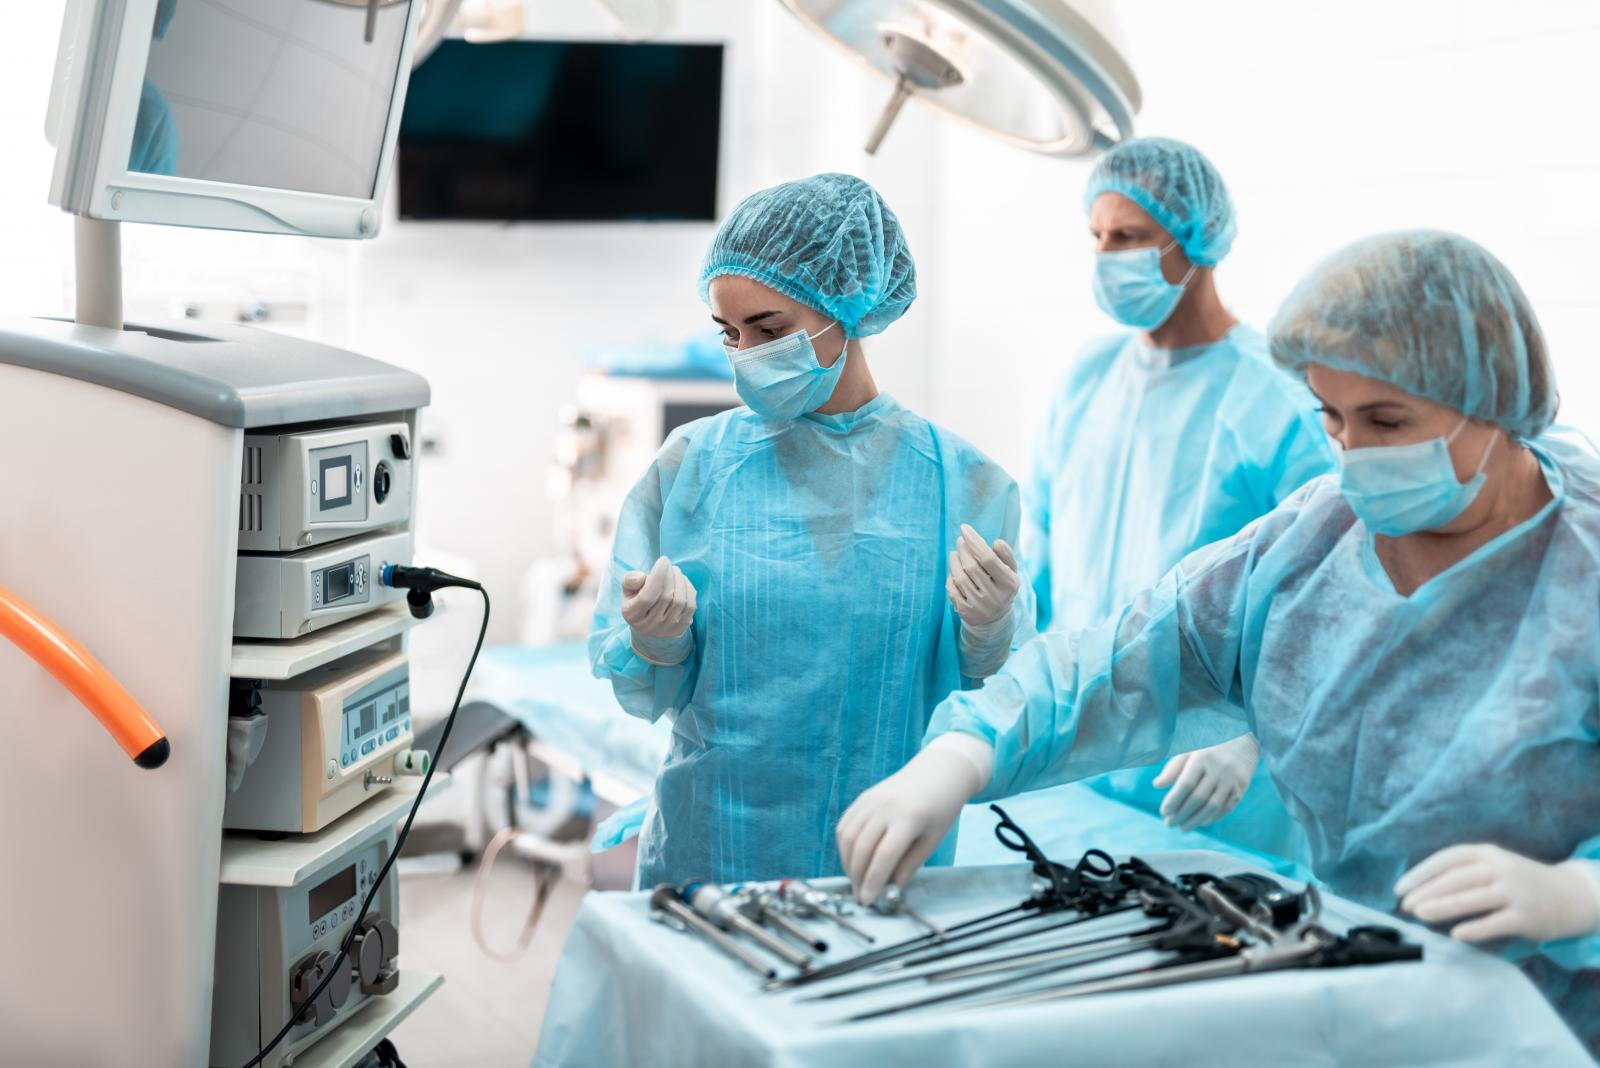 Medizinische Mitarbeiter bereiten sich auf eine laparoskopische Chirurgie vor